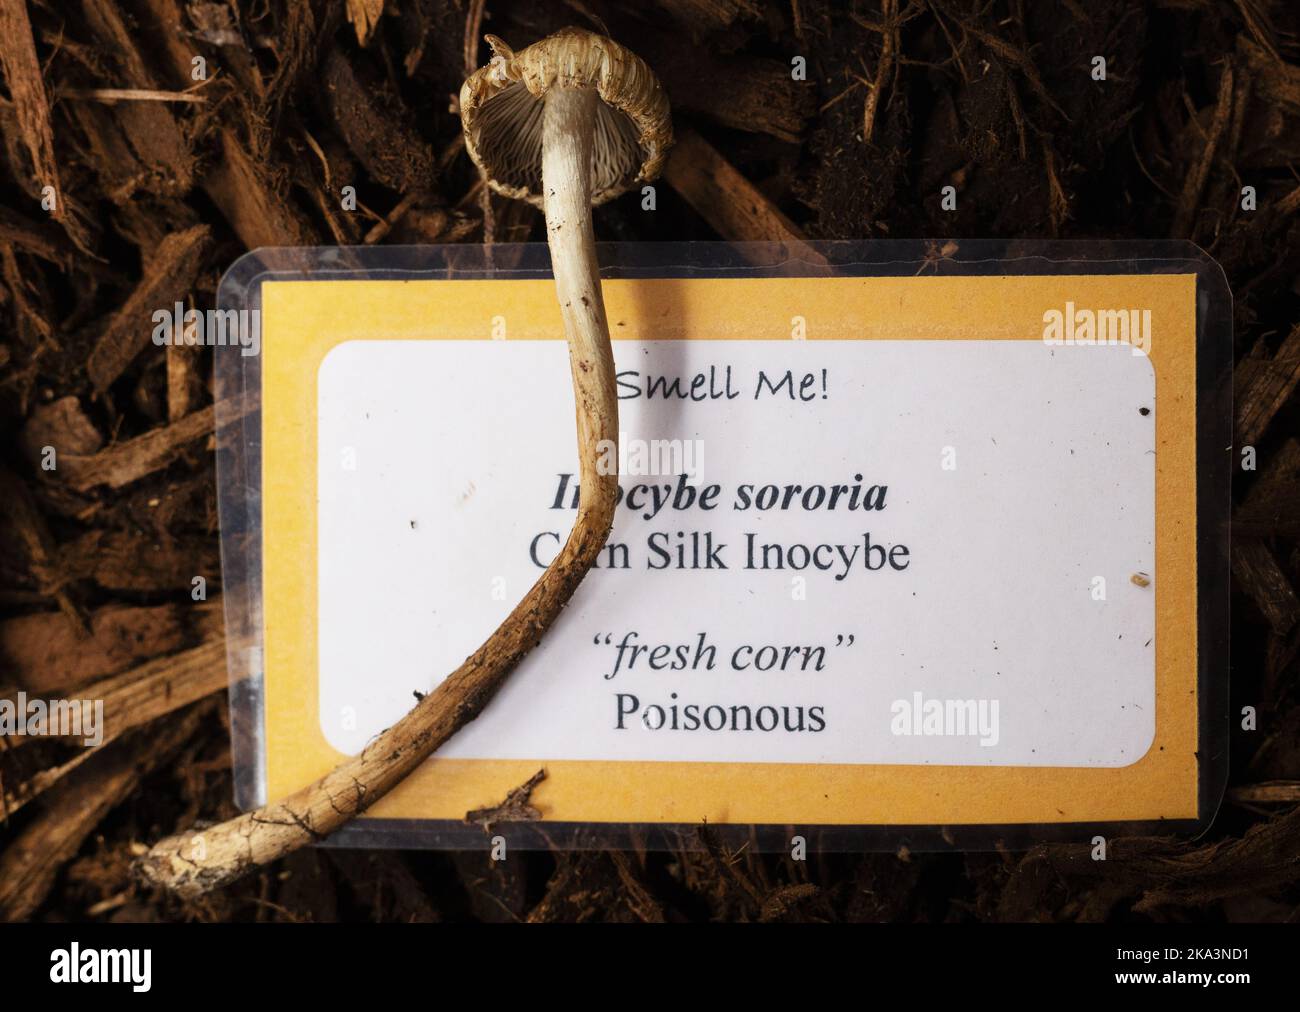 Inocybe sororia mushroom. Stock Photo